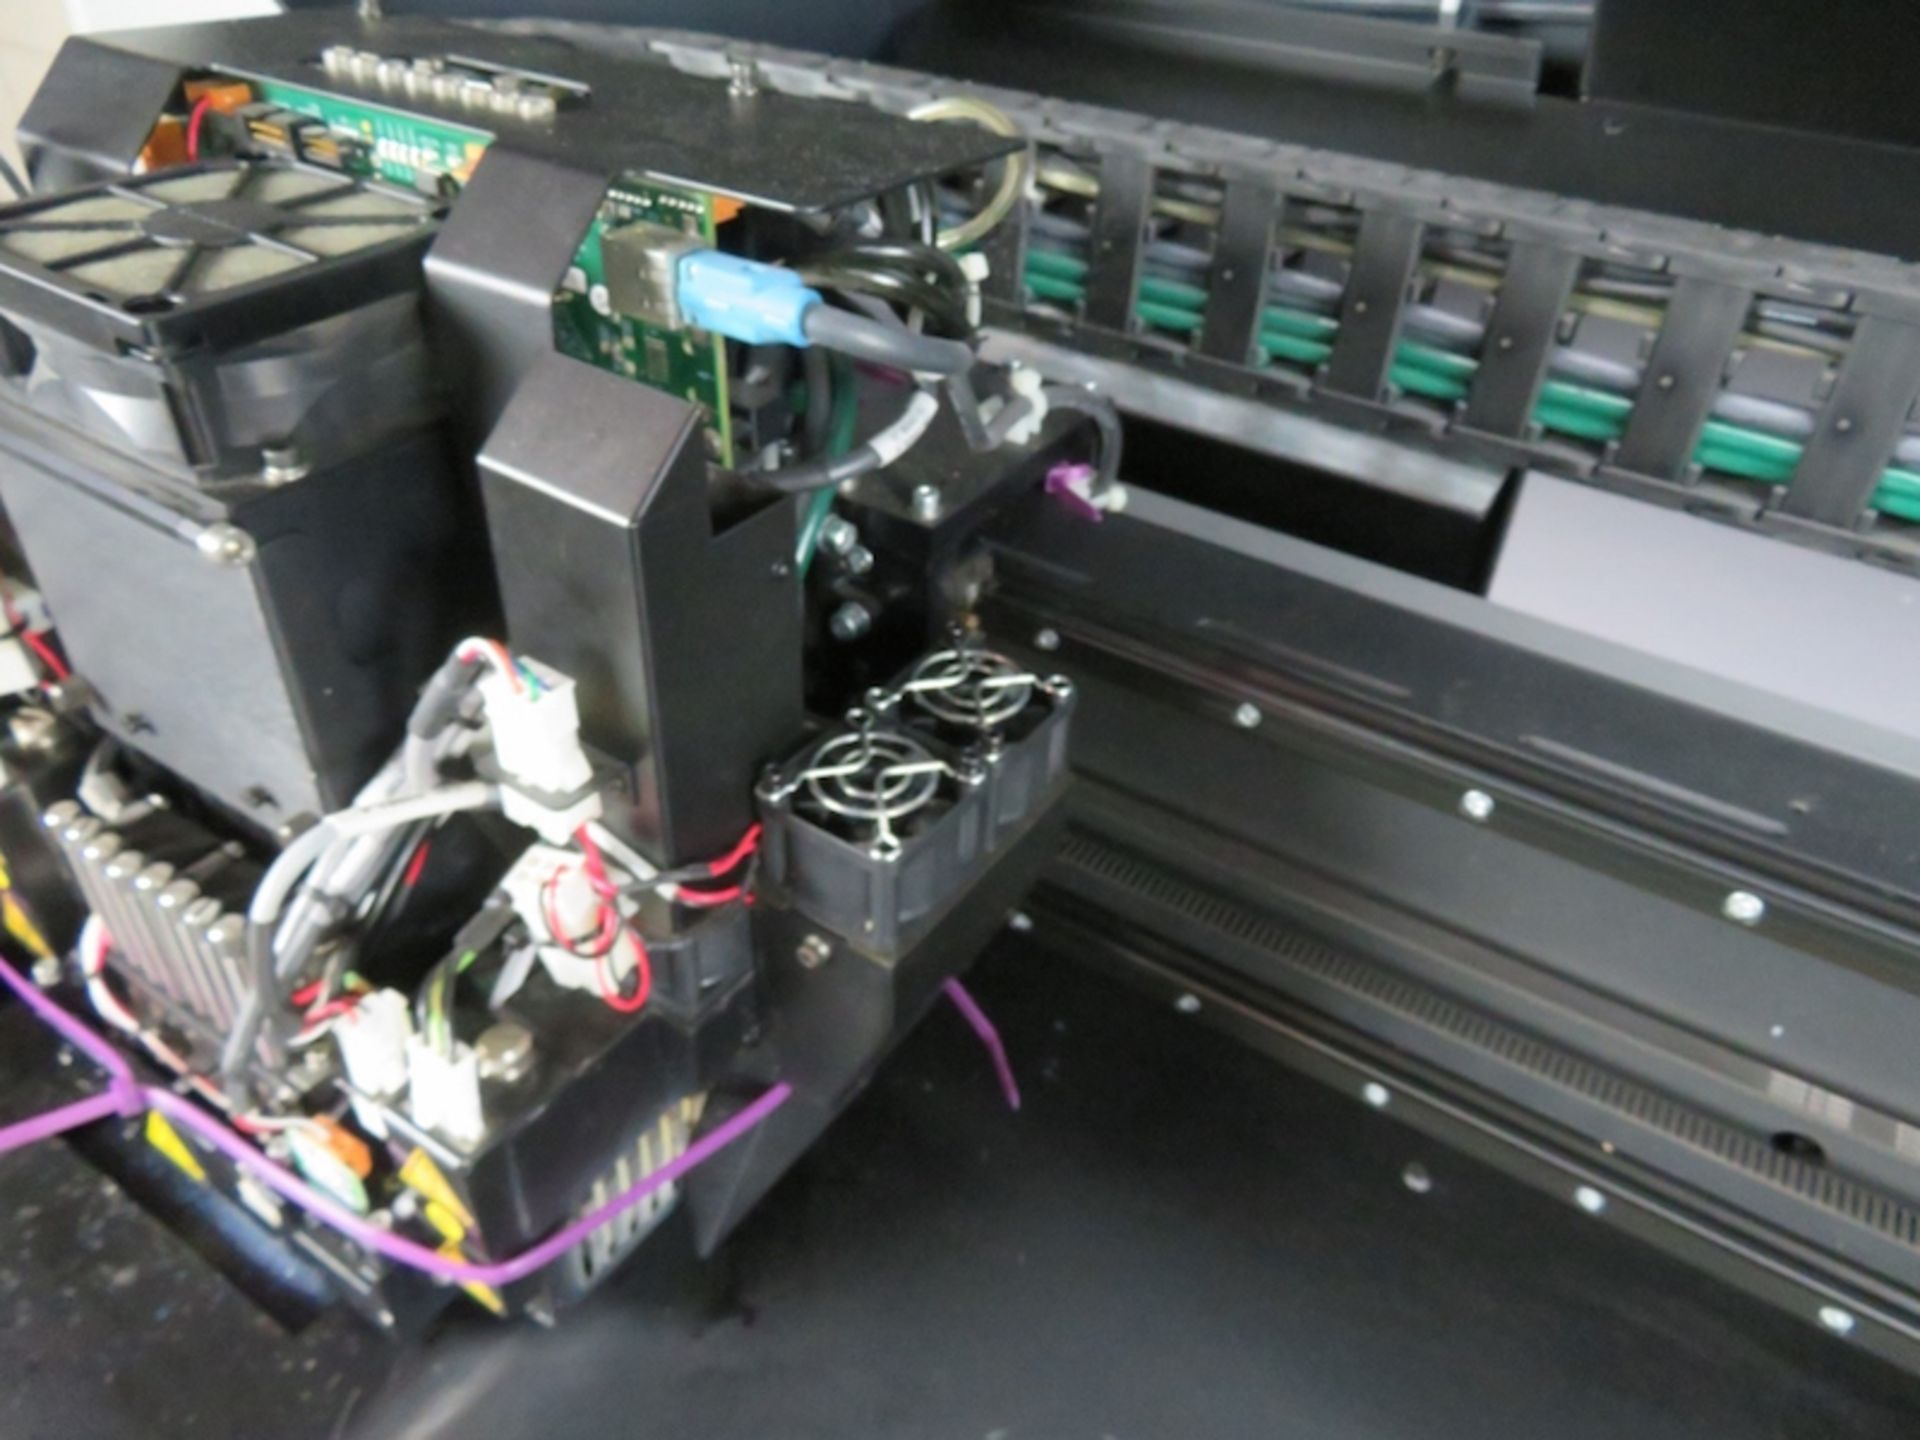 Stratsys Eden 350V 3D Printer, New in 2014 - Image 8 of 26